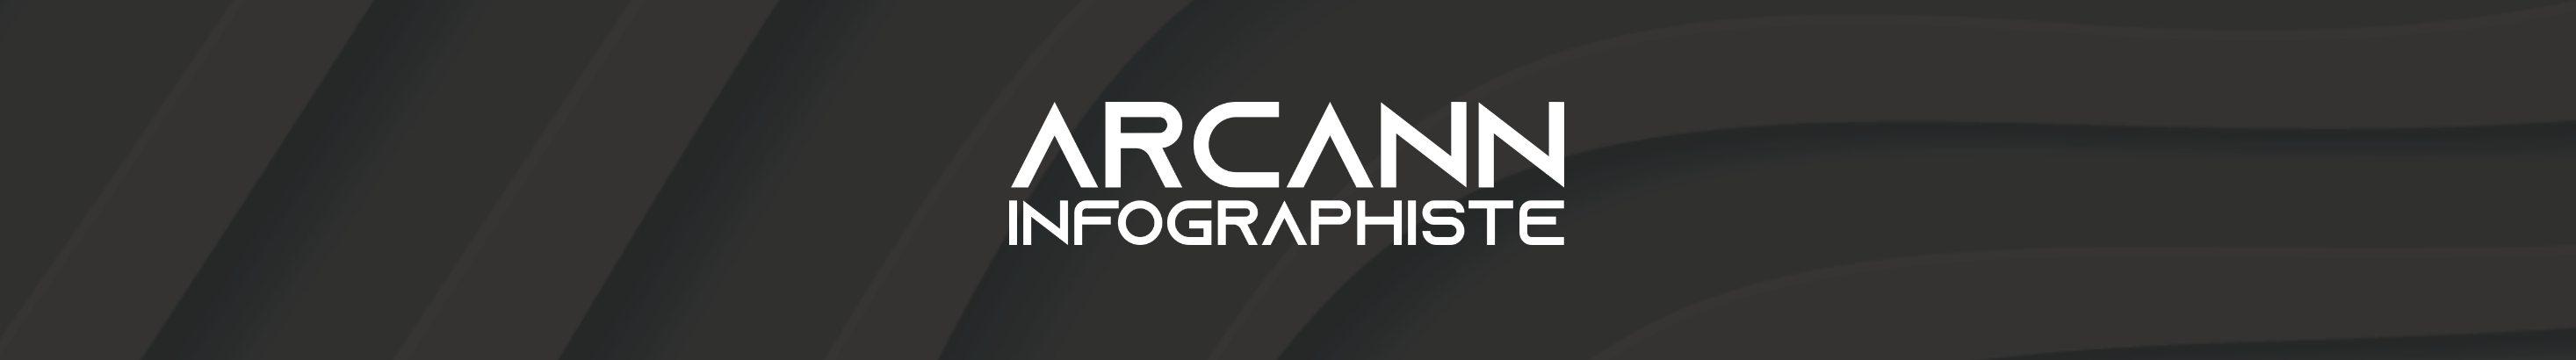 Arcann Infographiste's profile banner